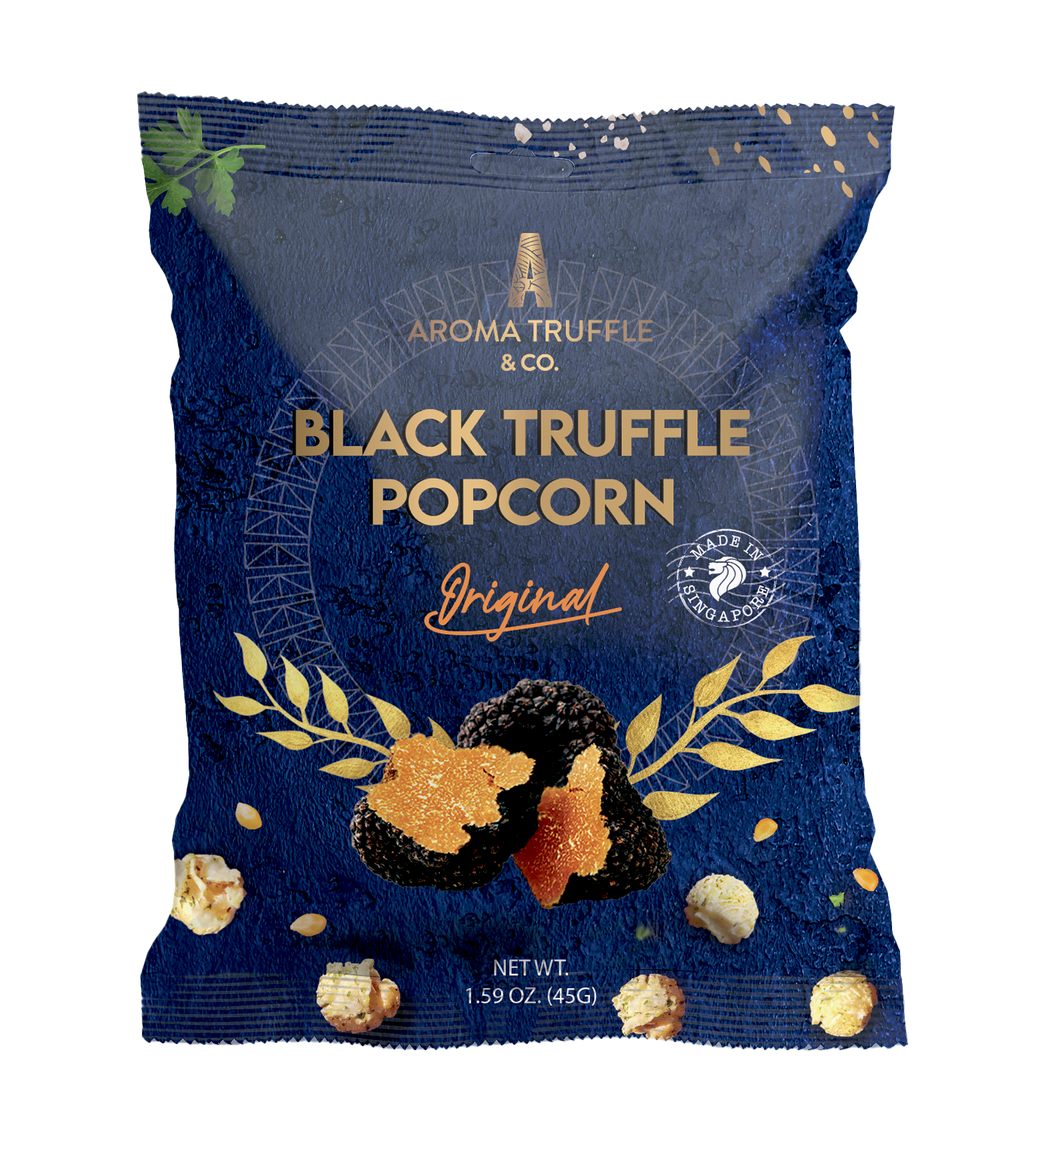 Pillow Pouch Black Summer Truffle Popcorn - Original 45G